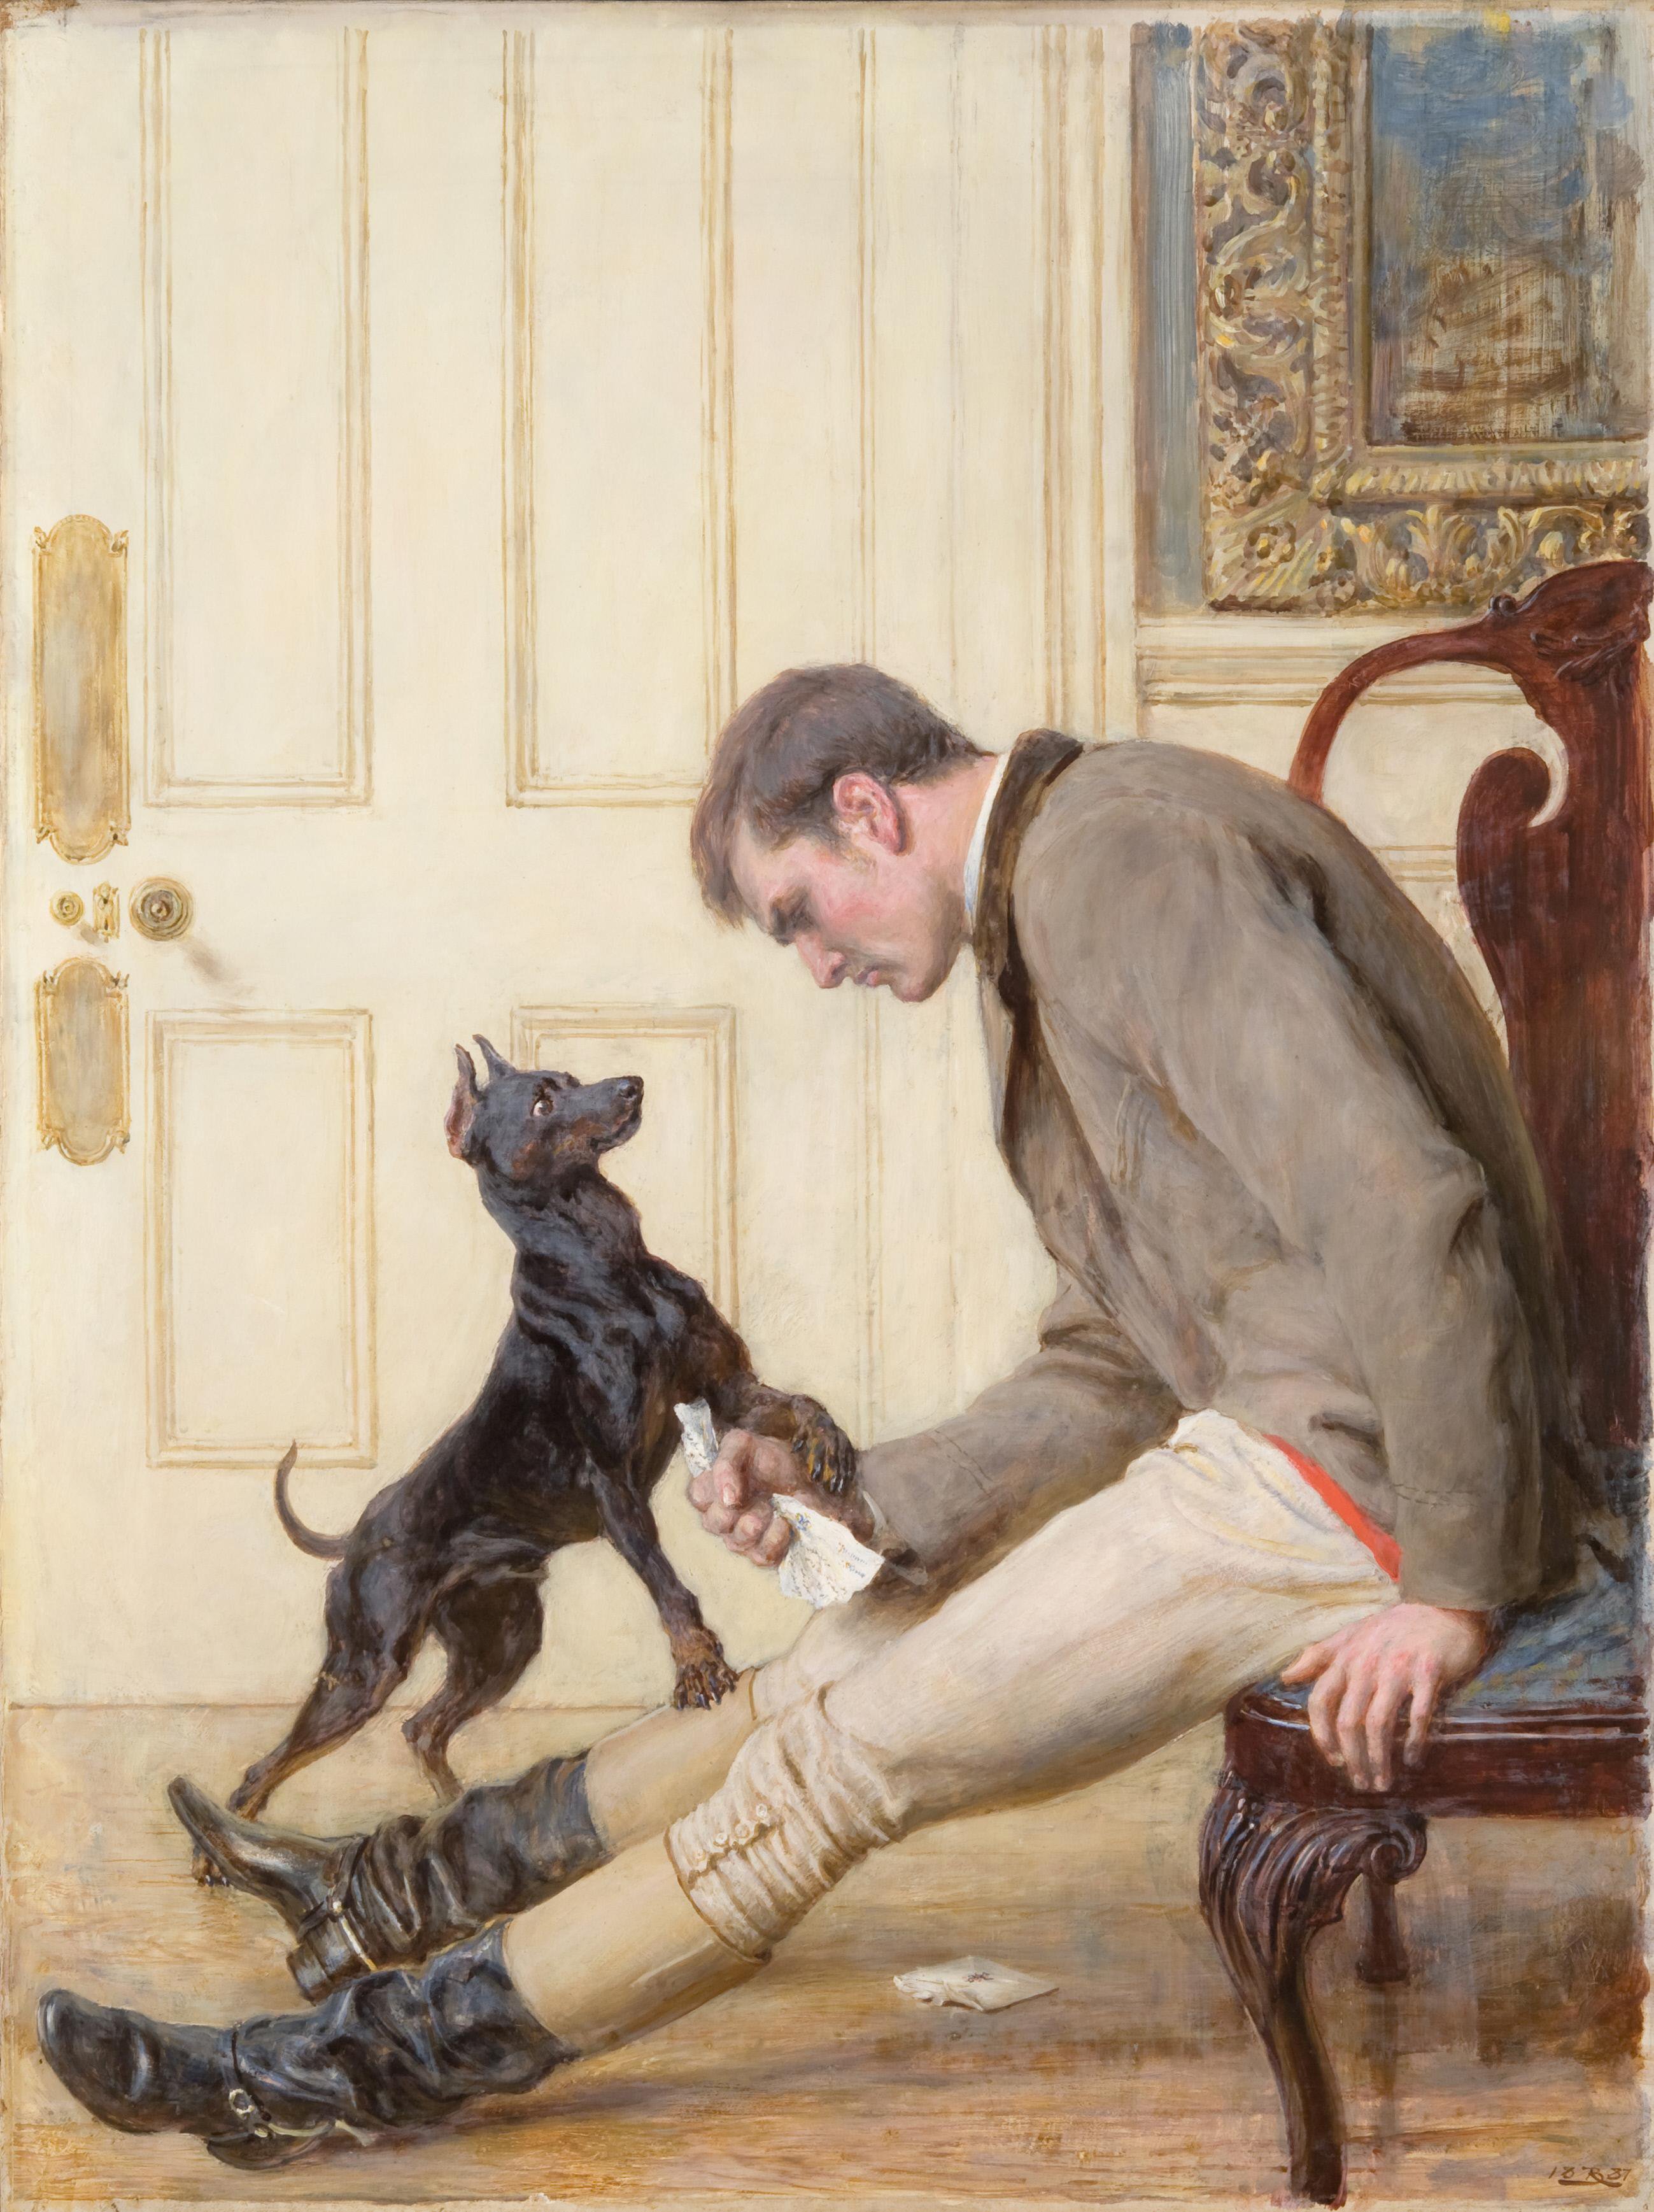 Părăsit by Briton Rivière - 1887 - 77.5 x 58.4 cm 